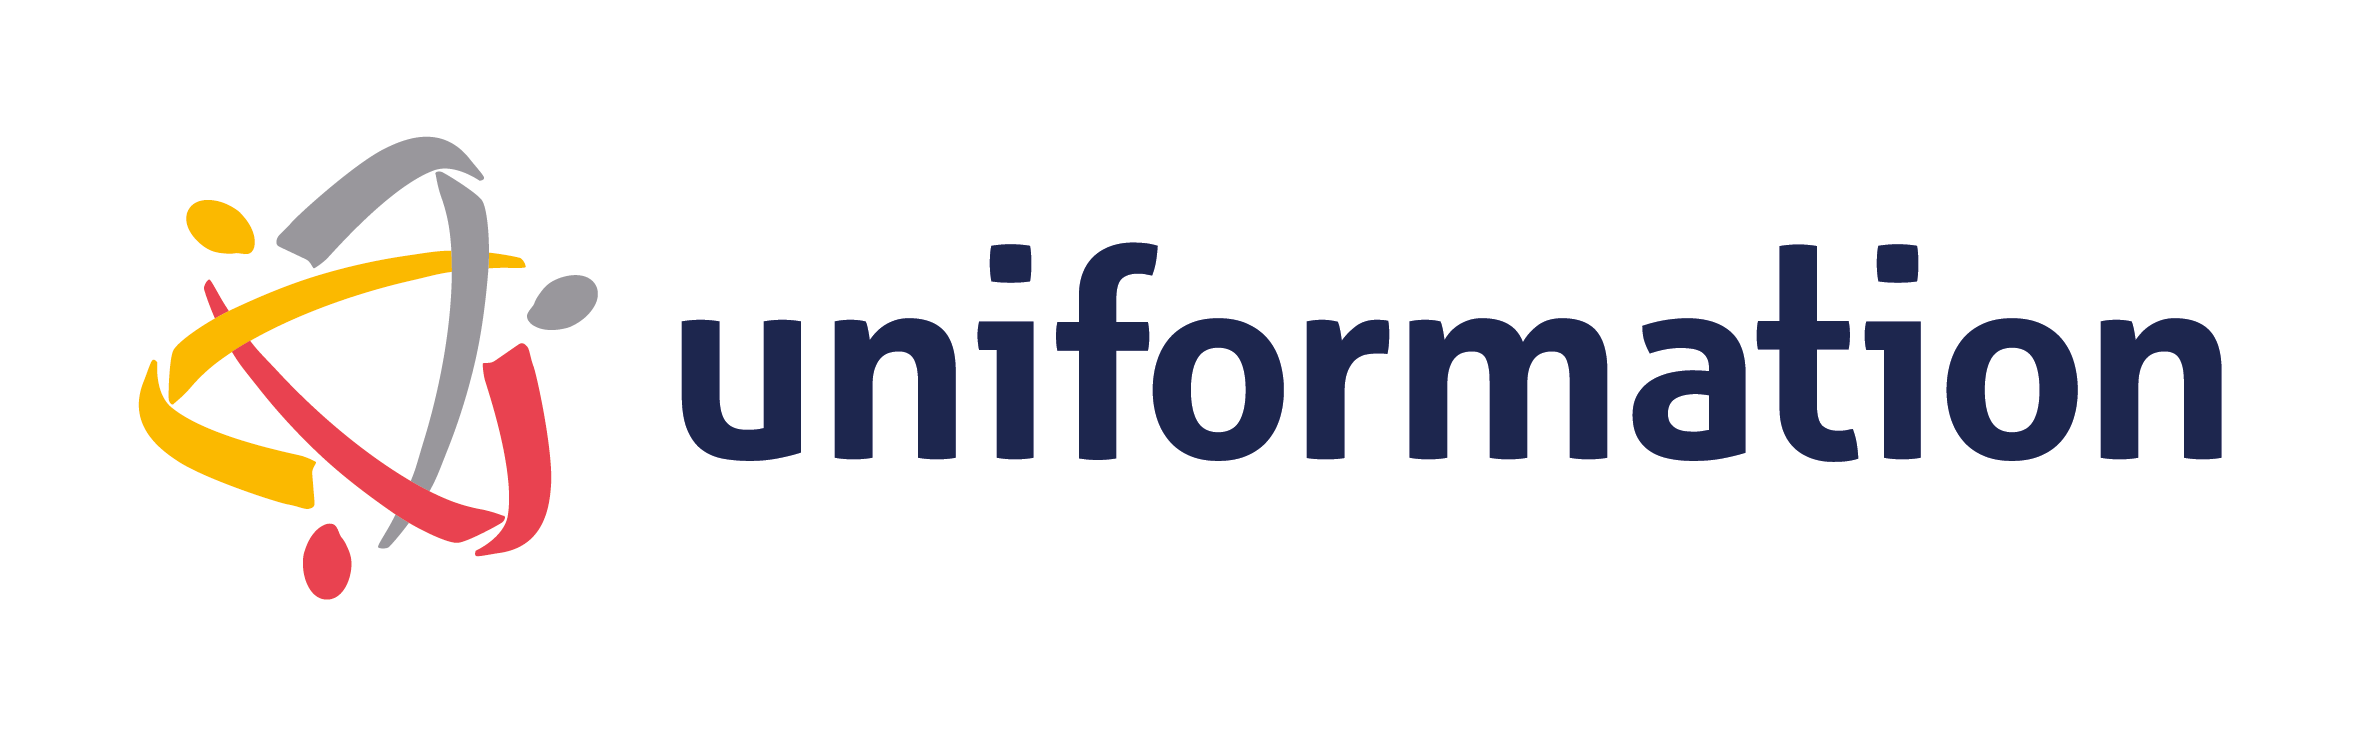 logo uniformation opco